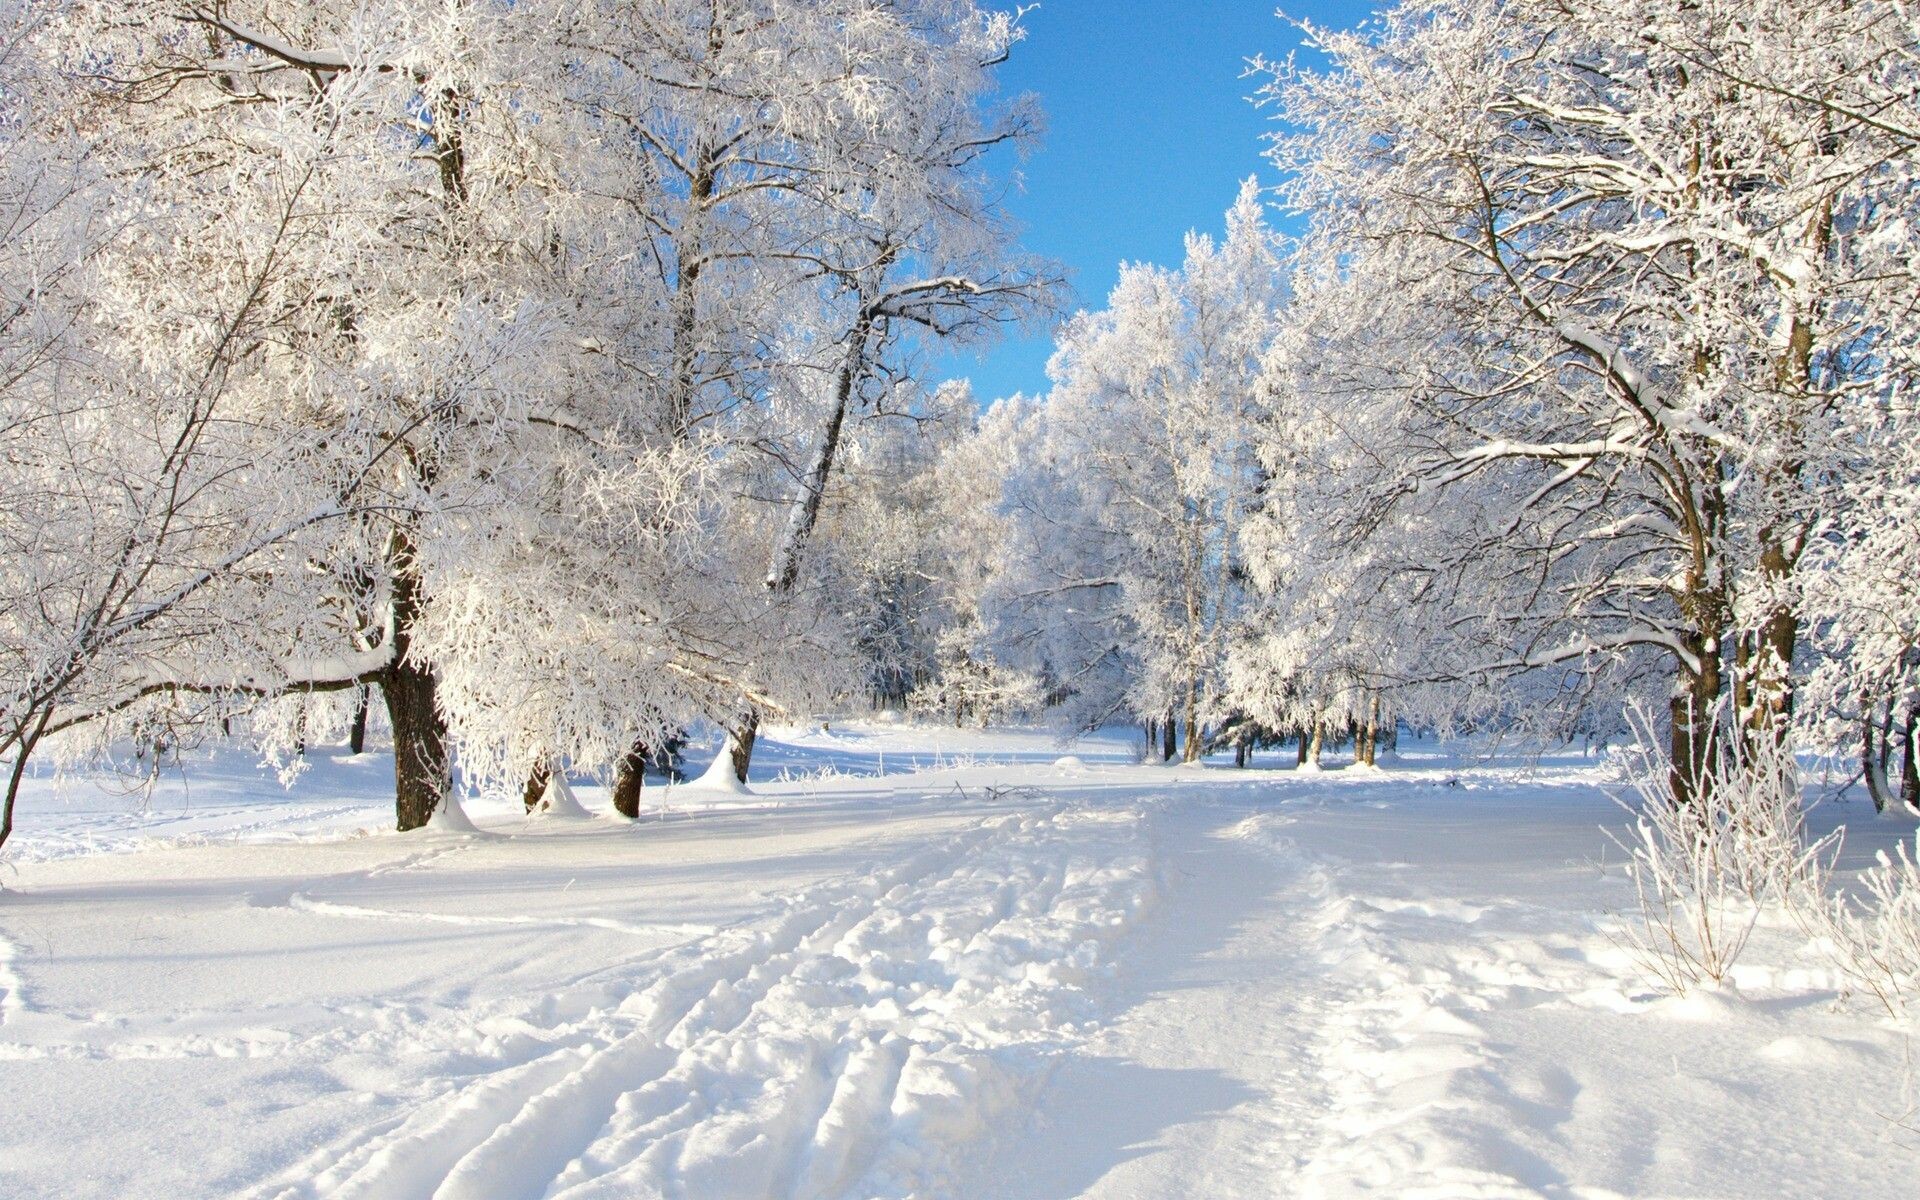 تصاویر فصل زمستان سرد و سفید با کیفیت HD برای پروفایل و پس زمینه